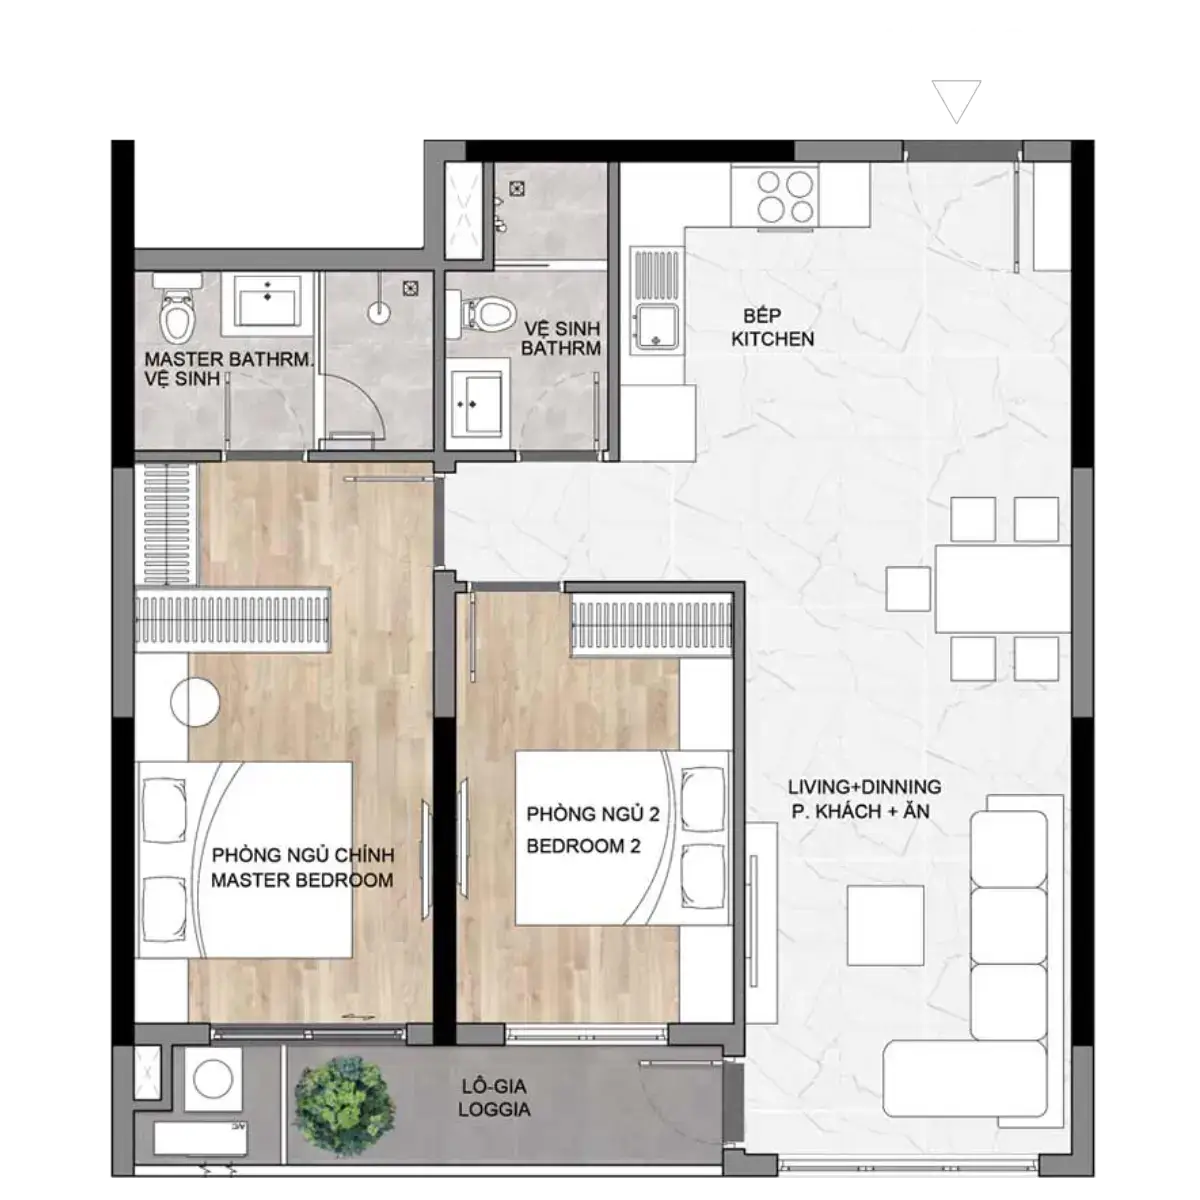 Thiết kế Layout mặt bằng căn hộ Elysian - Loại 2PN B1D - diện tích 74m2